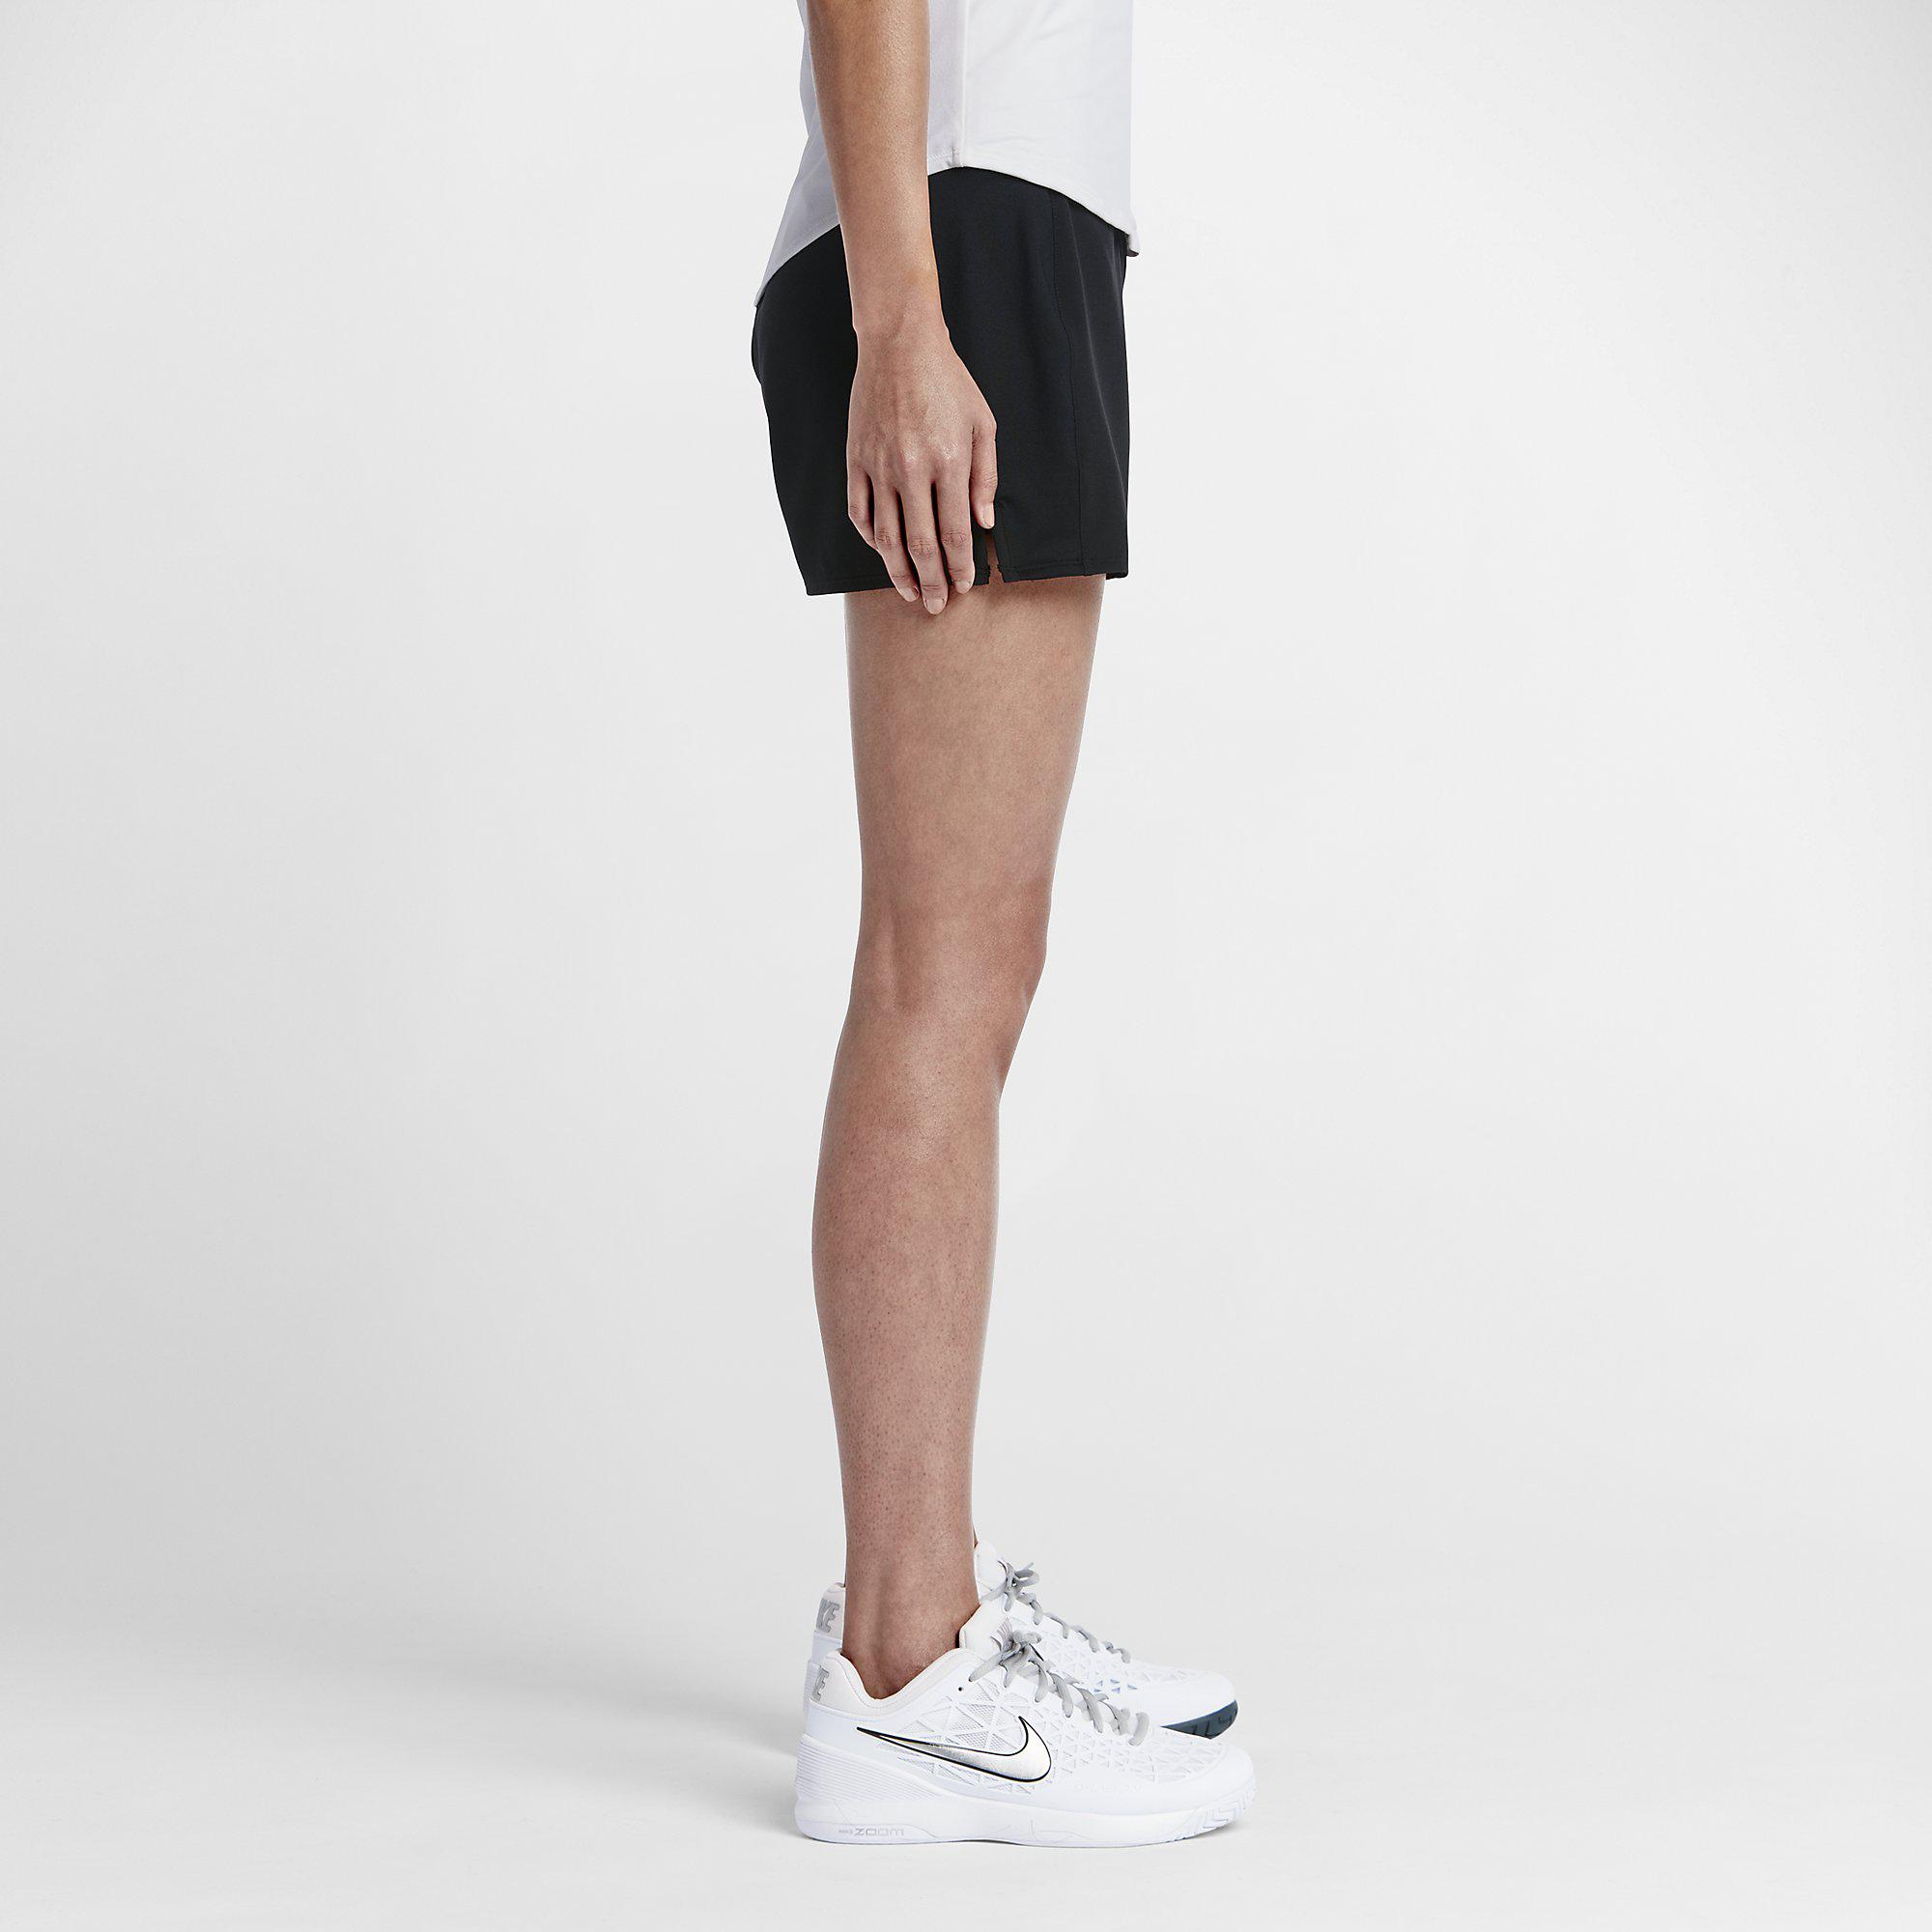 Nike Womens Baseline Tennis Shorts - Black - Tennisnuts.com